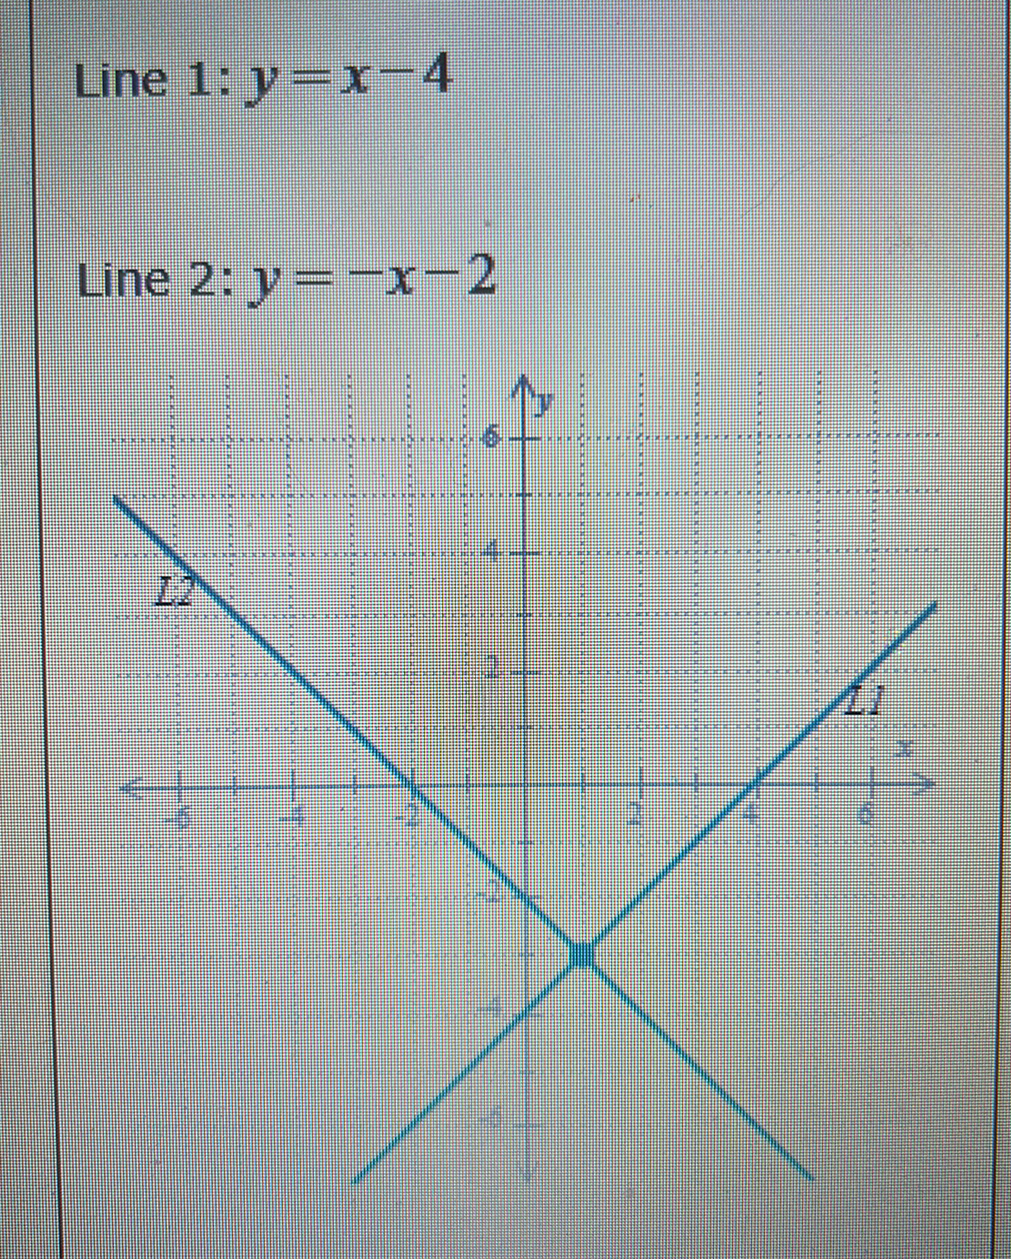 Line 1: y=x-4
Line 2: y=-x-2
20